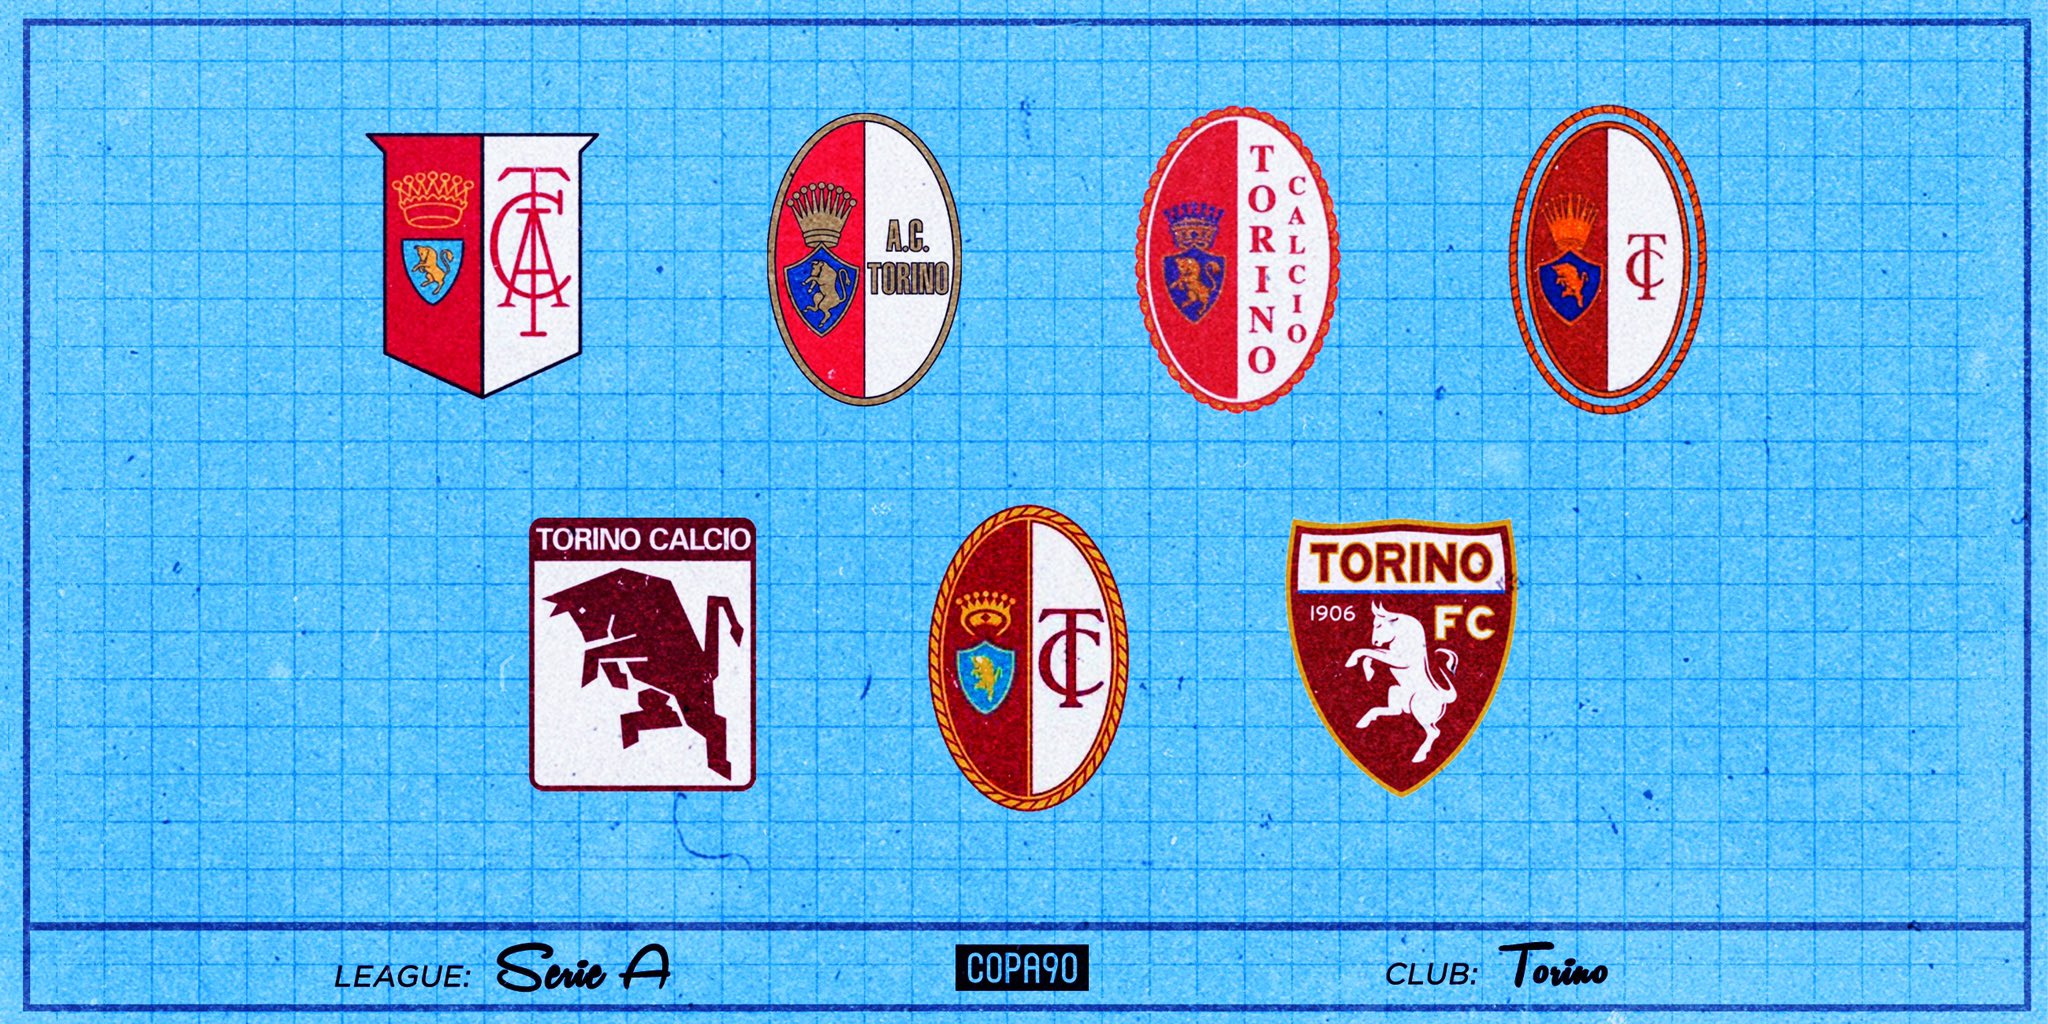 Torino: Serie A alternative club guide, Torino